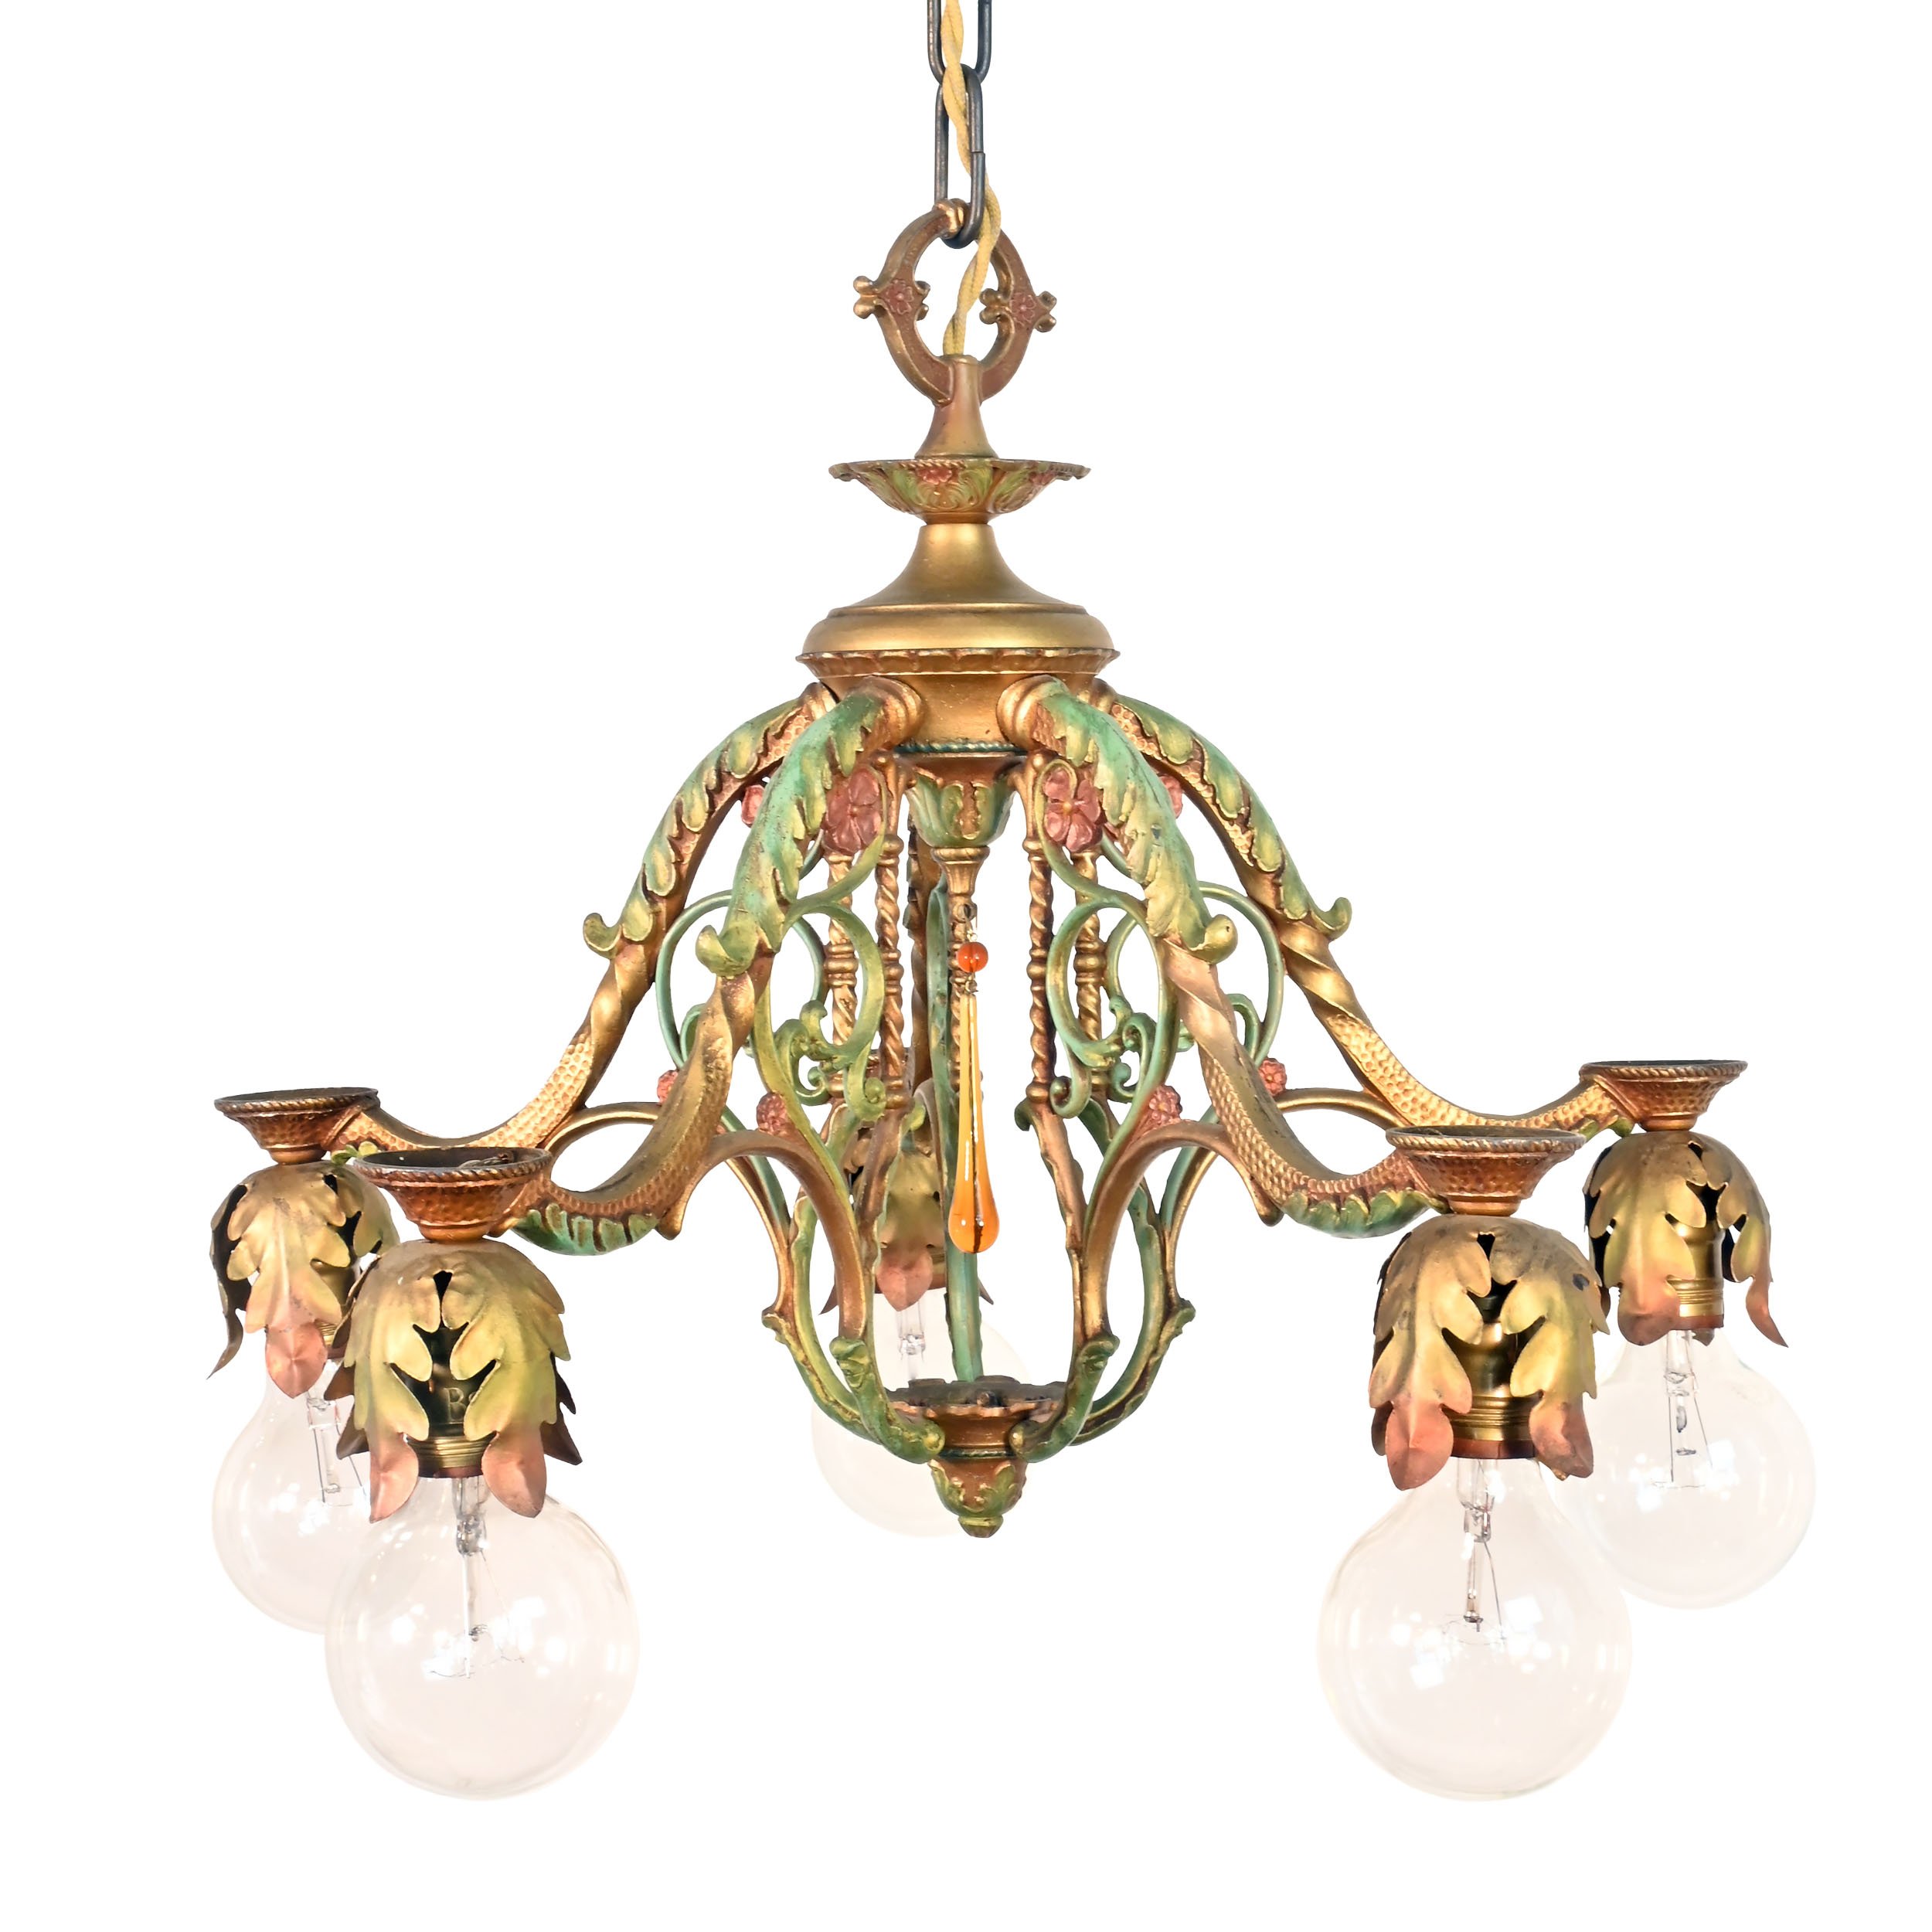 5 light bare bulb cast iron chandelier with original polychrome